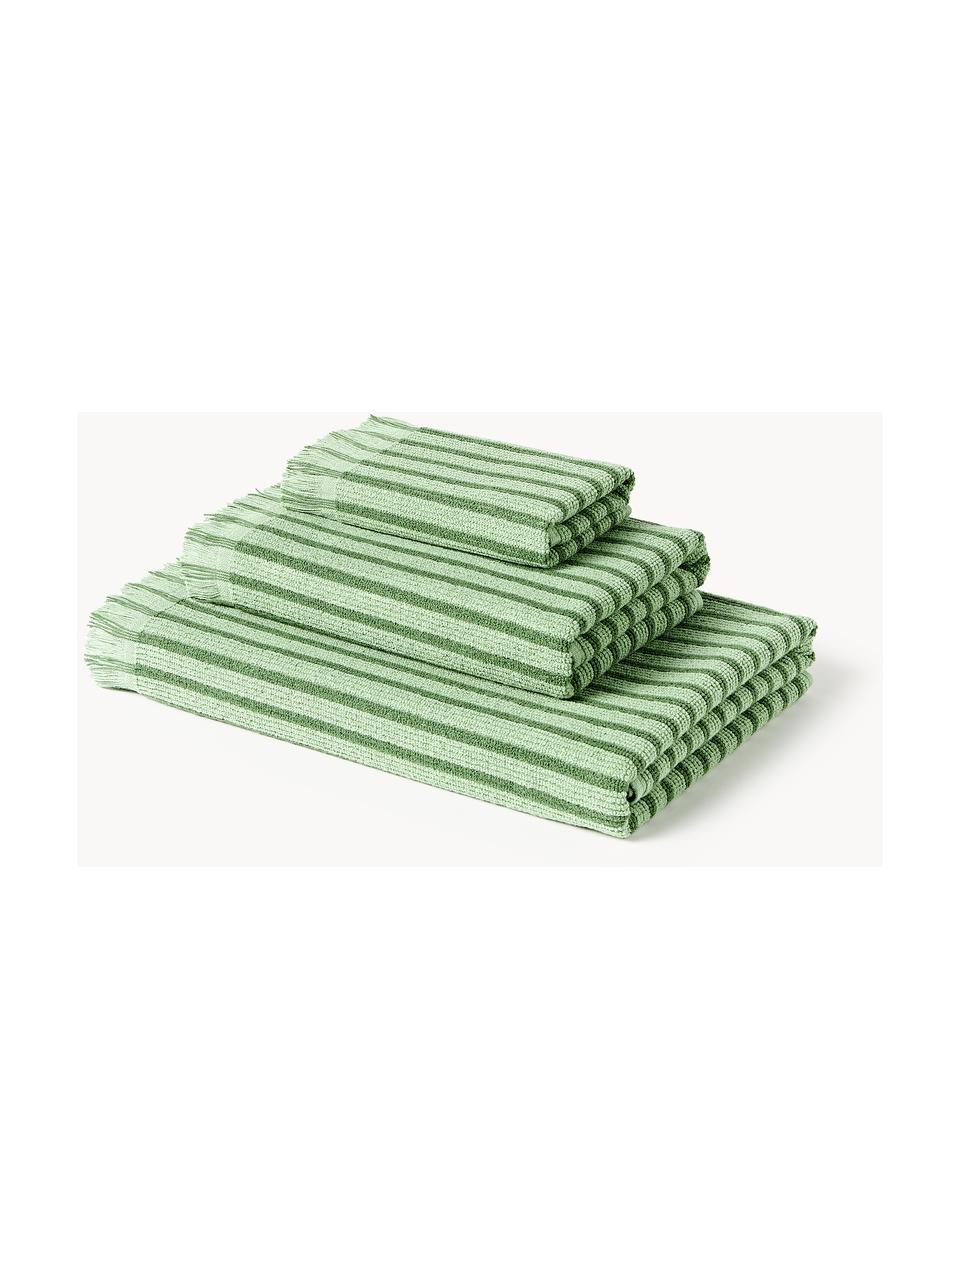 Serviettes de toilette Irma, tailles variées, Vert, 4 éléments (2 serviettes de toilette et 2 draps de bain)